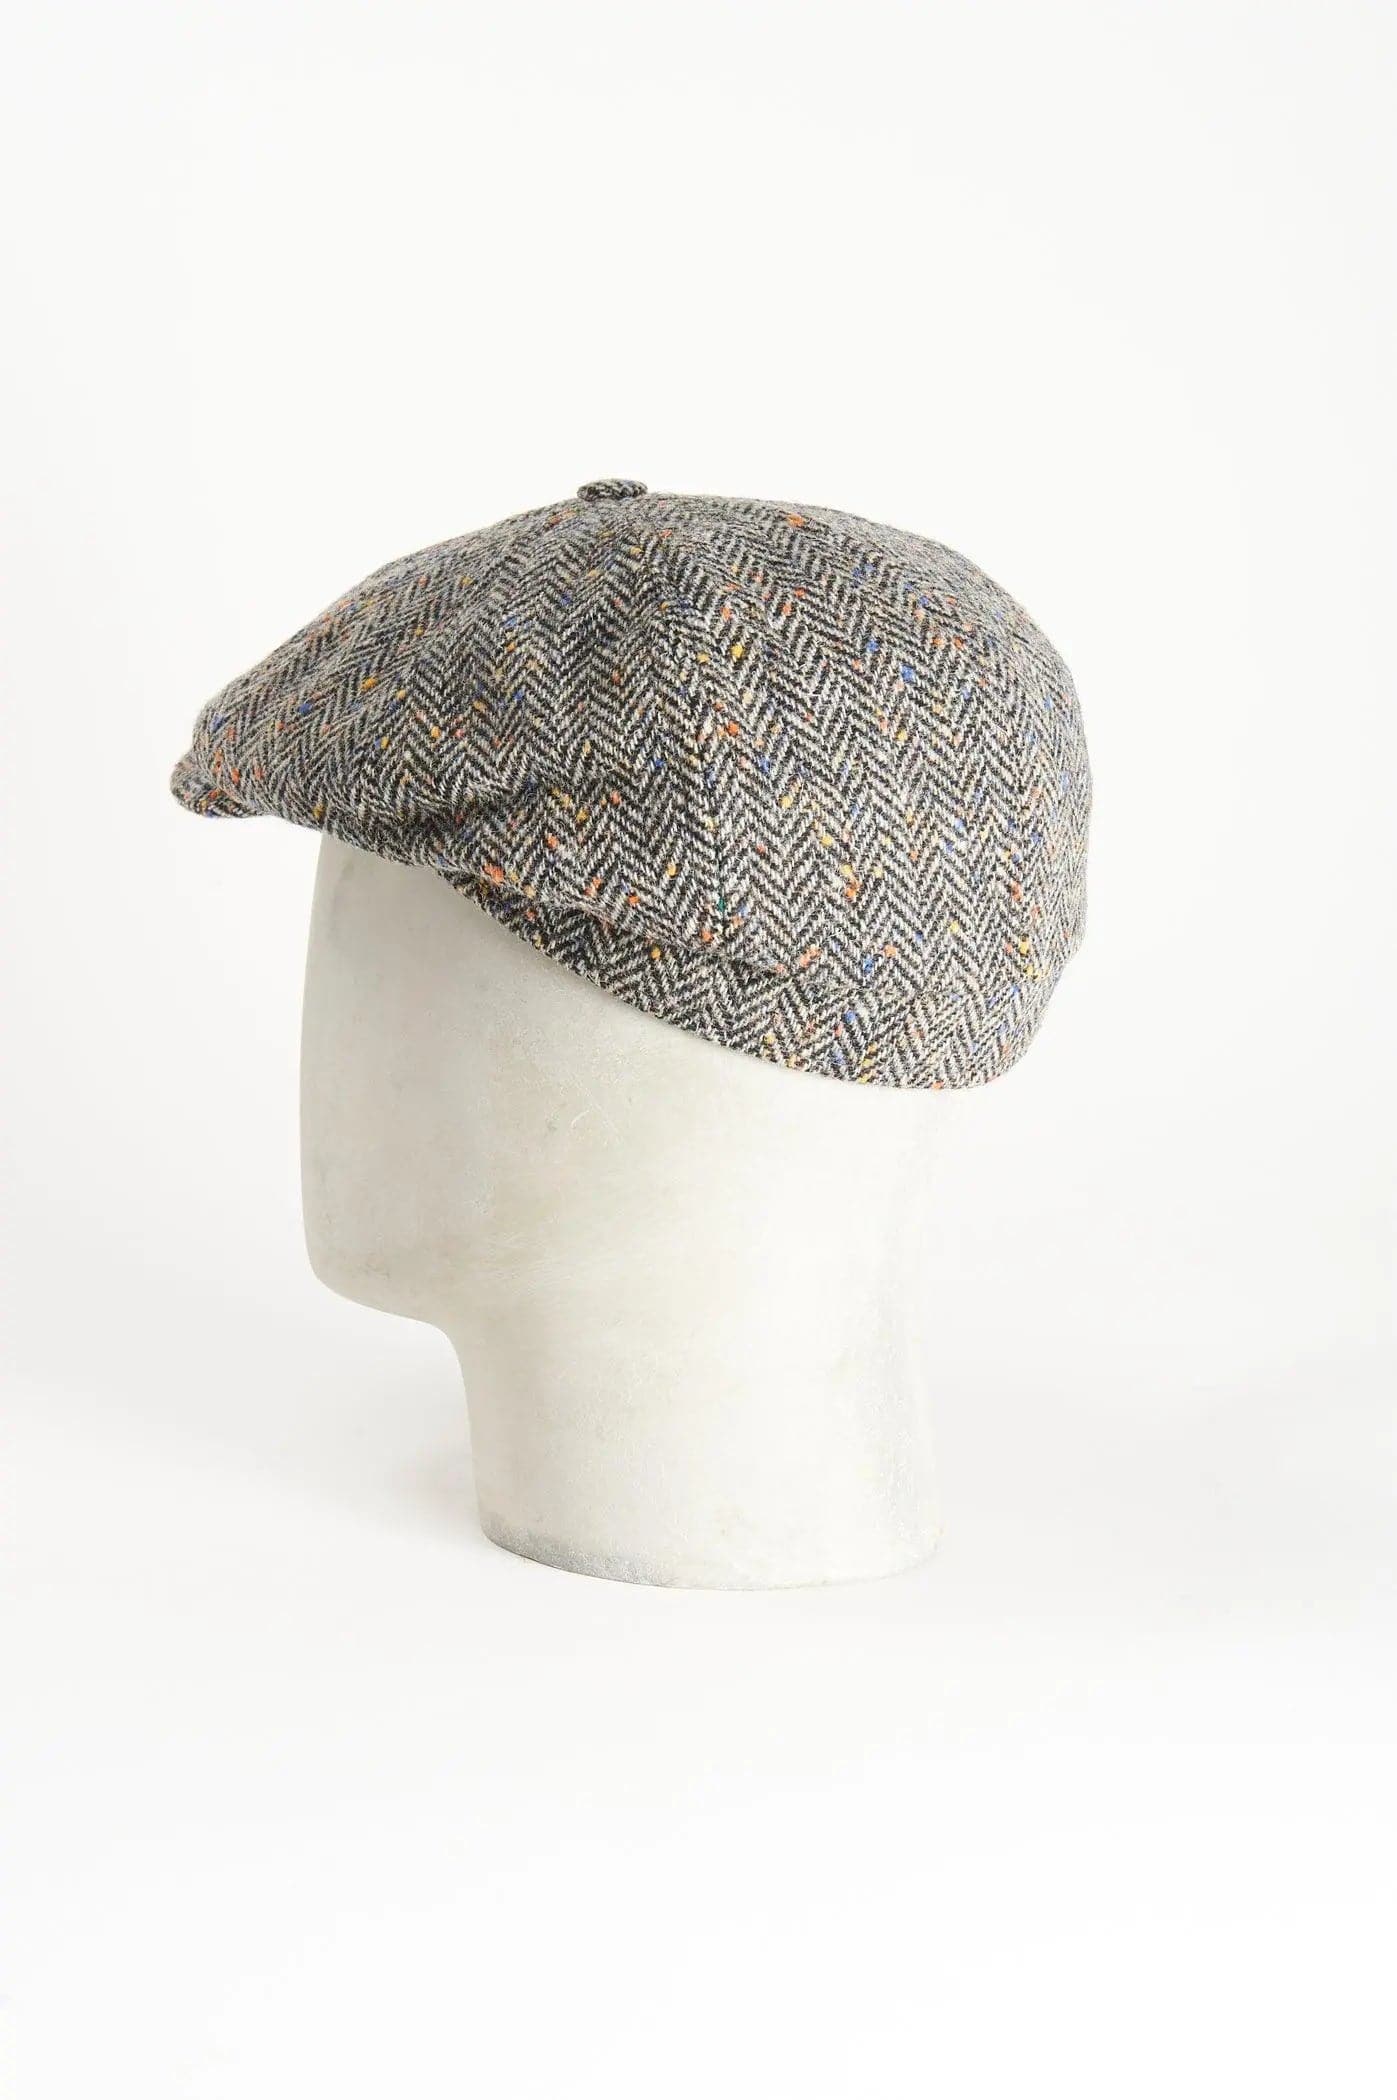 Otto spicchi (8 pieces)
L'Otto Spicchi è un cappello di forma unica, il che lo rende un accessorio versatile adatto ad ogni situazione. Goditi l'eleganza di ogni momento con un tocco di raDE PAZ